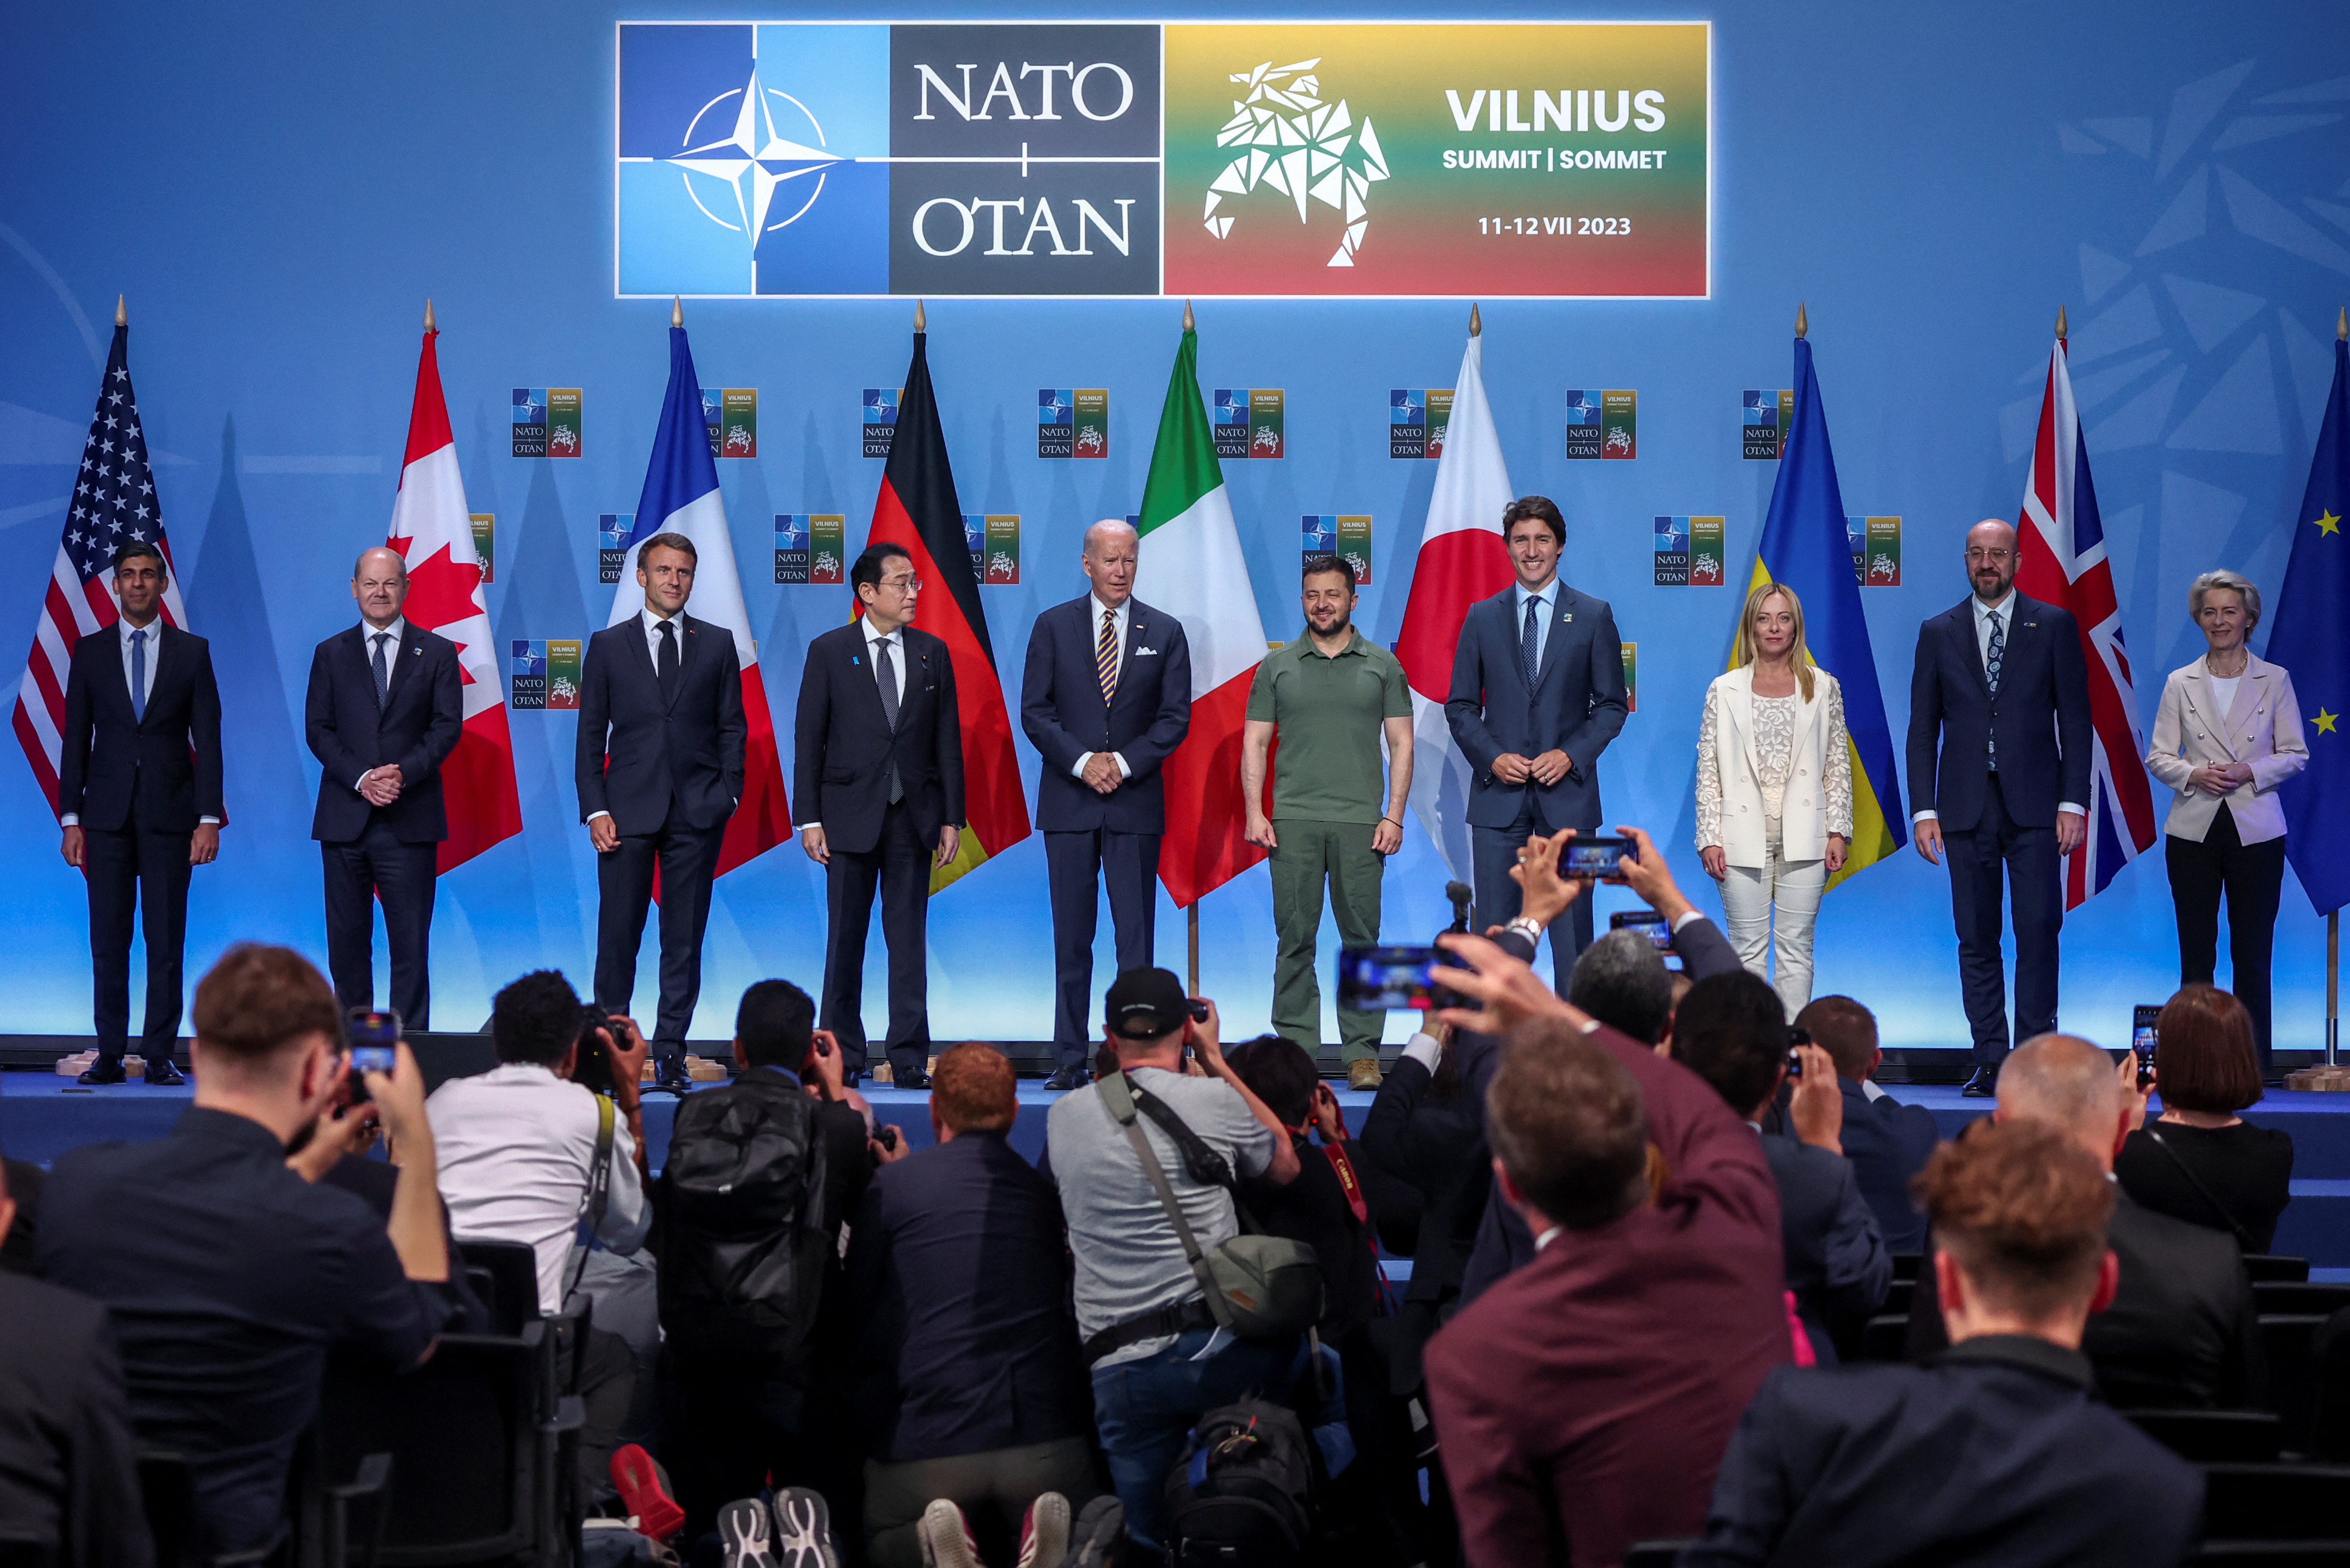 Состав нато 2023. Саммит НАТО 2023. Саммит в Вильнюсе 2023. Пражский саммит НАТО 2002. Встреча НАТО.